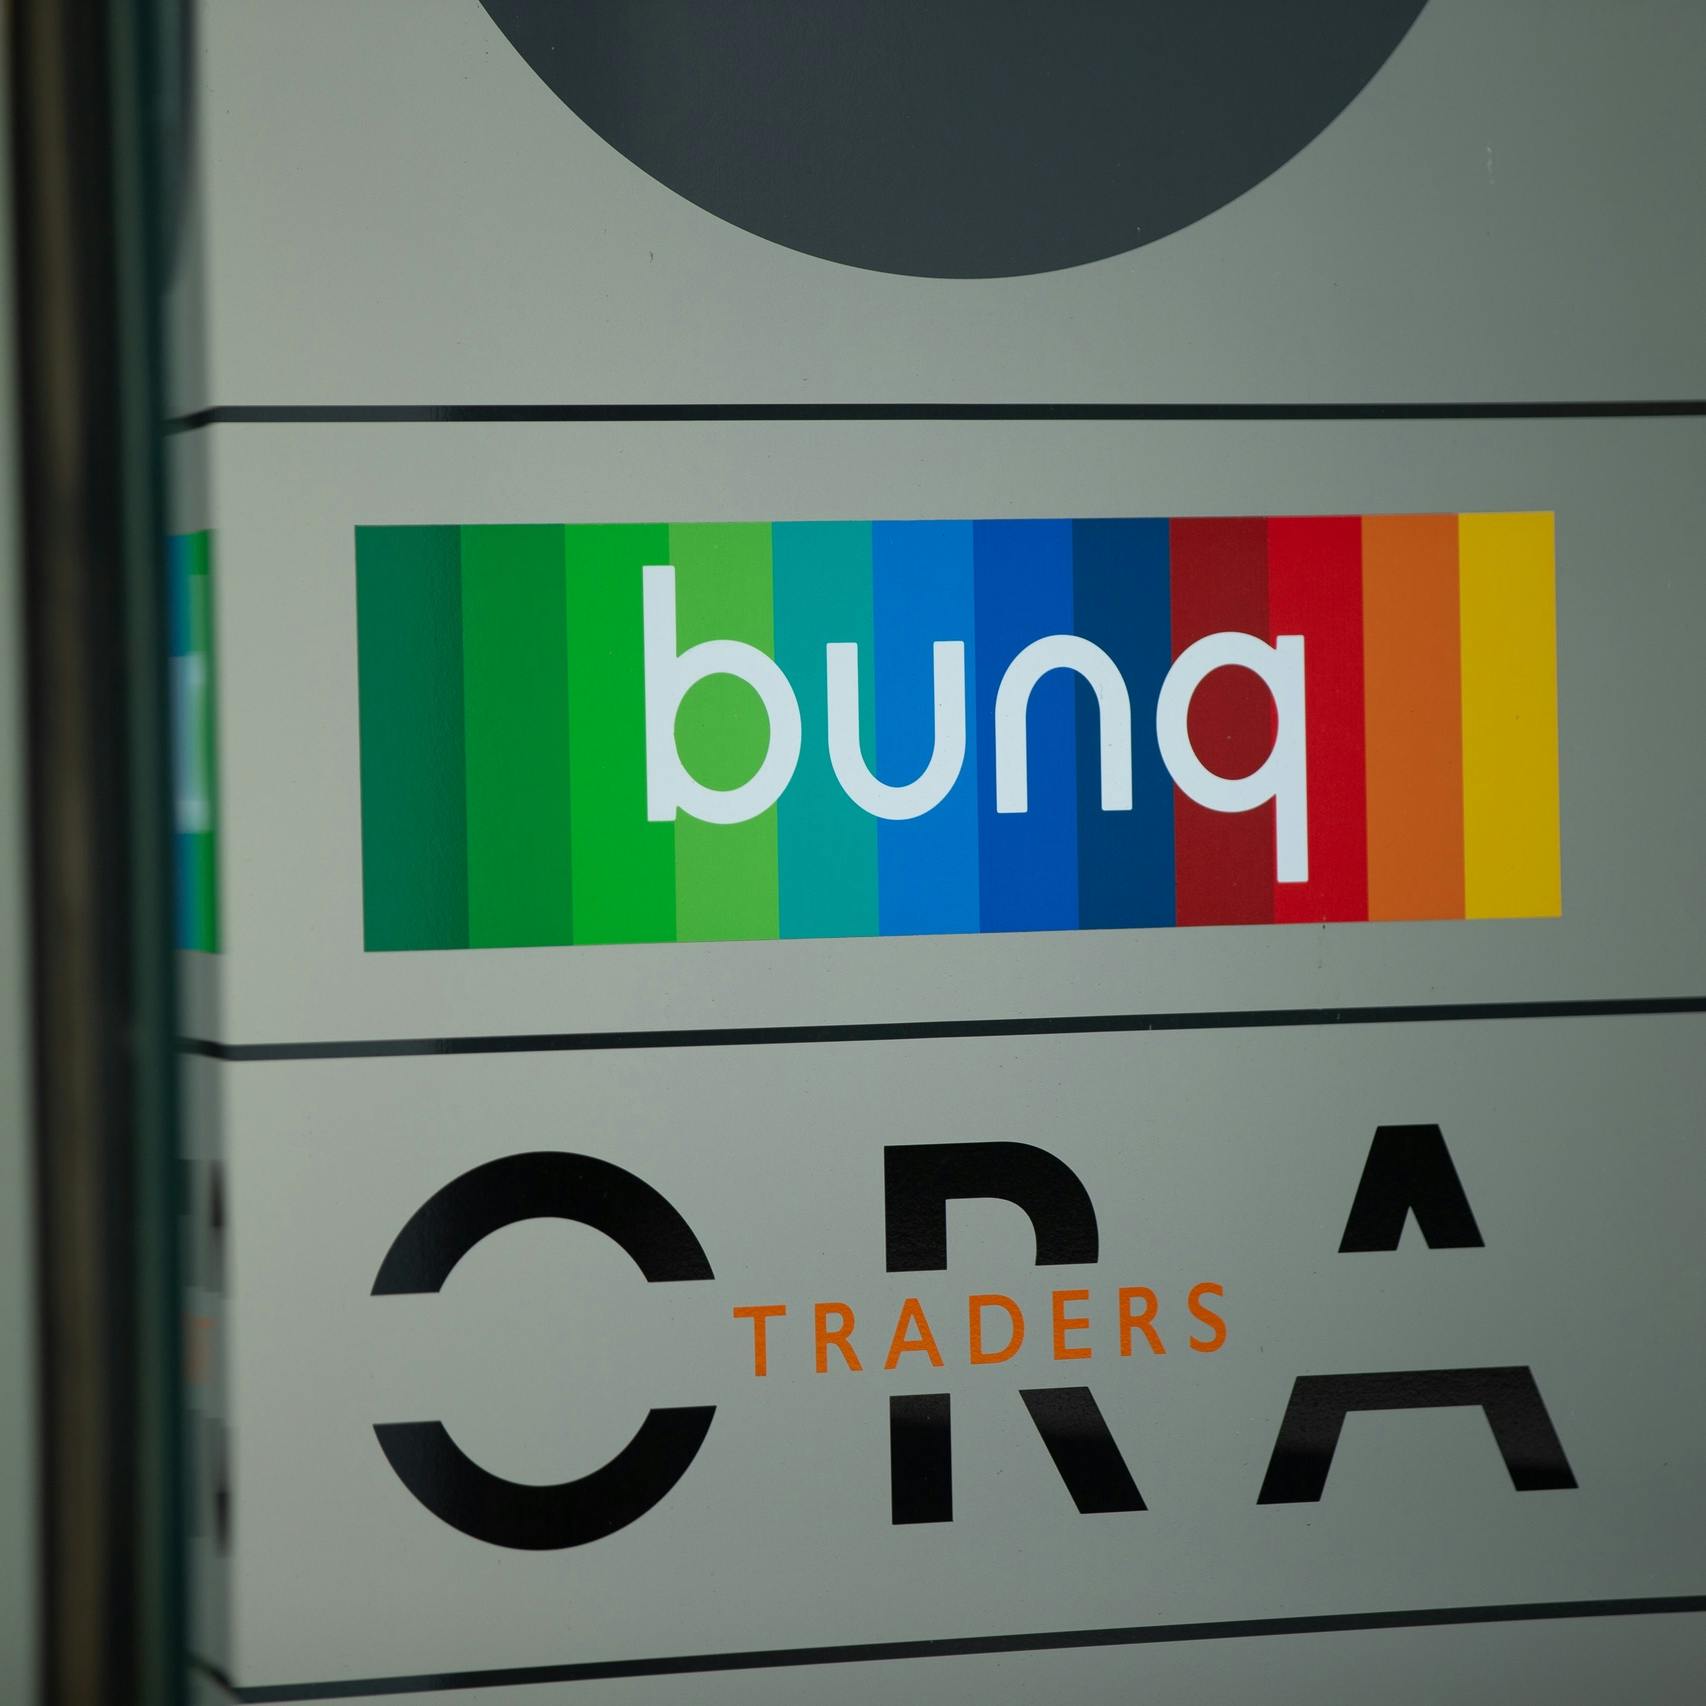 Onlinebank bunq heeft eerste winstgevende maand ooit